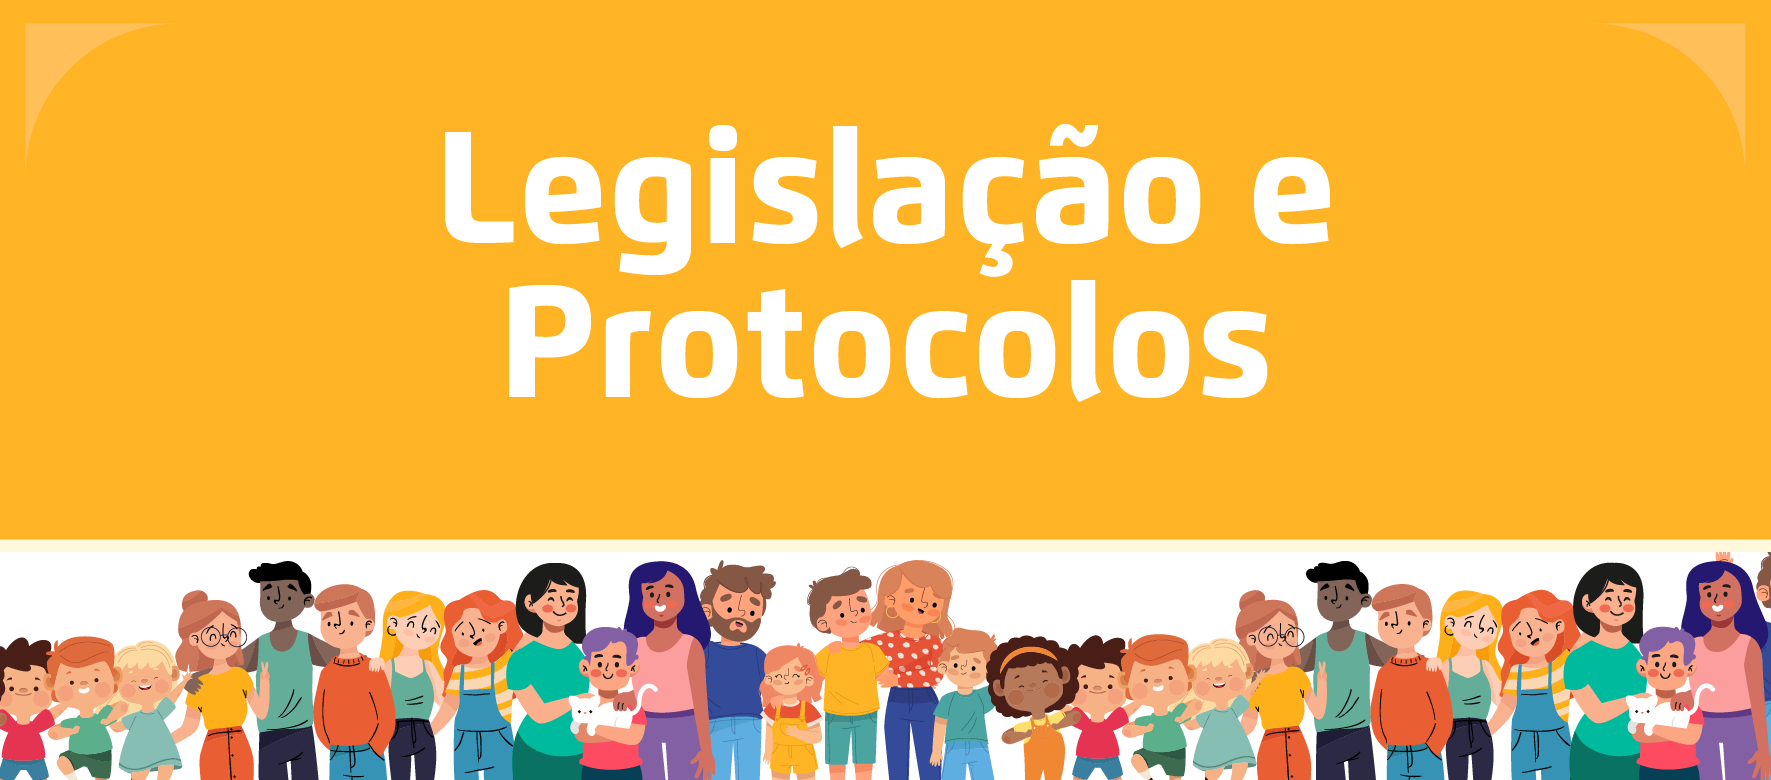 A arte apresenta ilustrações de famílias na parte inferior, e em cima o título "Legislação e Protocolos" em branco com um fundo amarelo